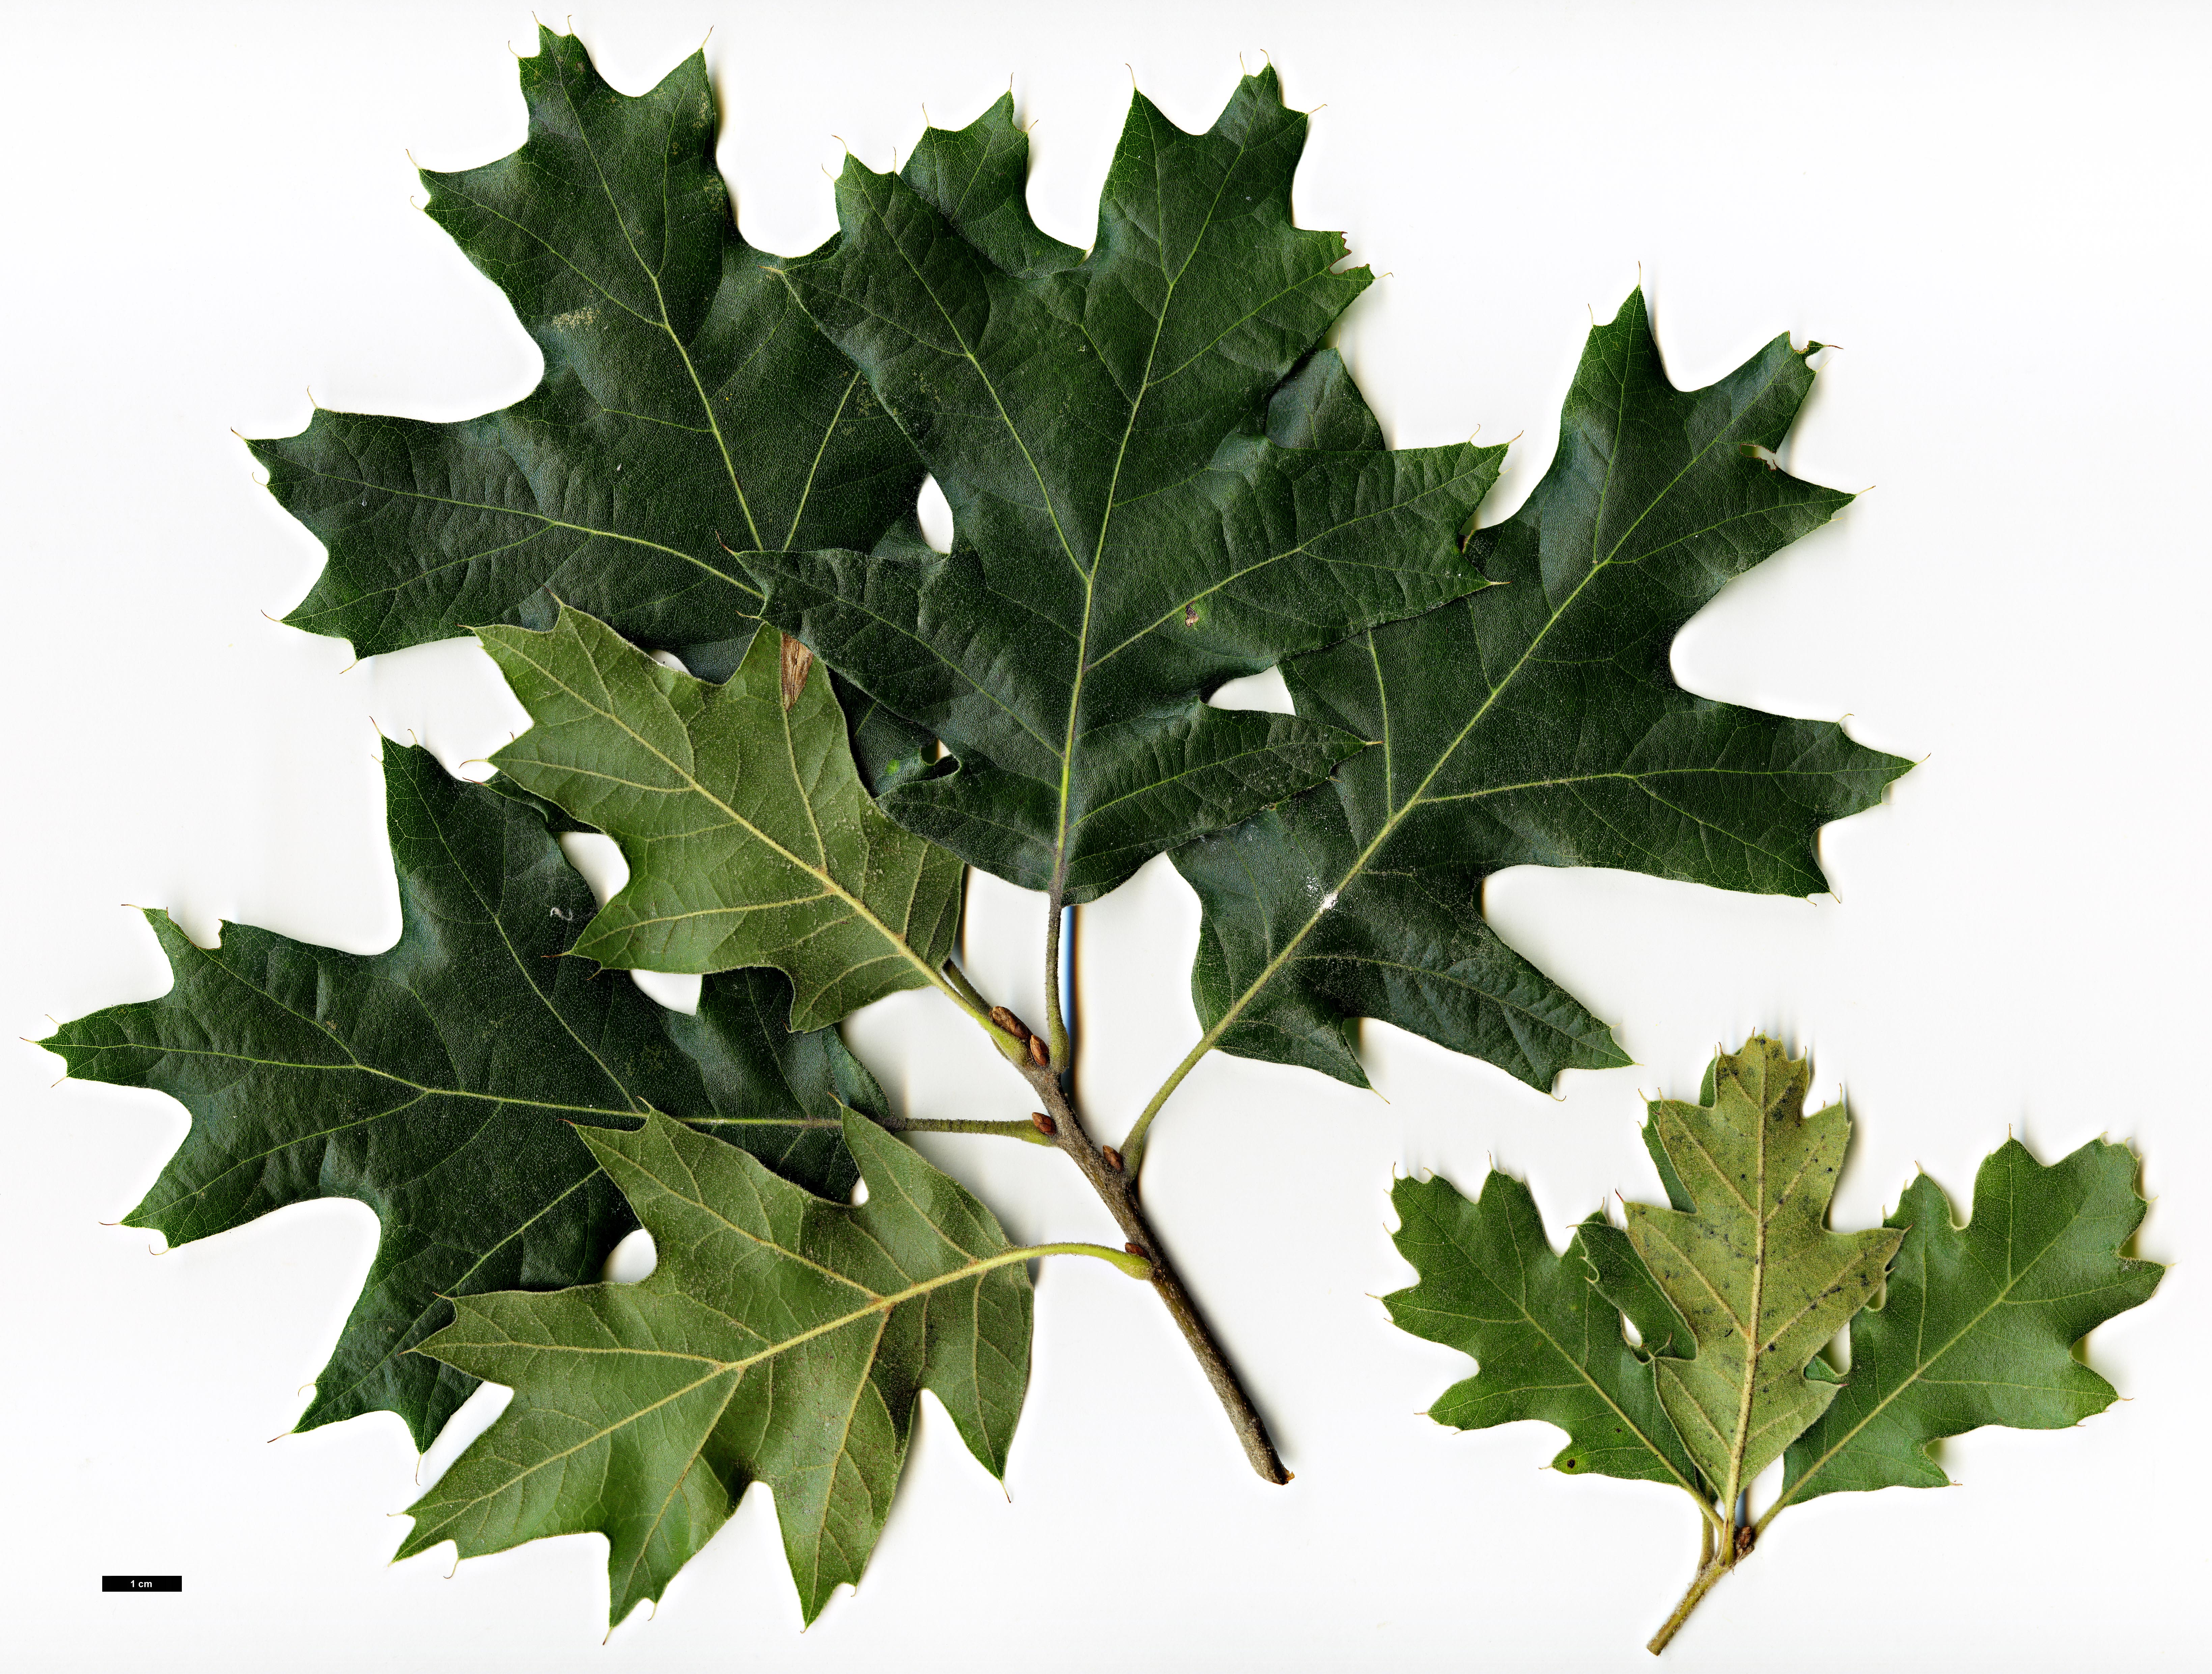 High resolution image: Family: Fagaceae - Genus: Quercus - Taxon: ×rehderi (Q.ilicifolia × Q.velutina)